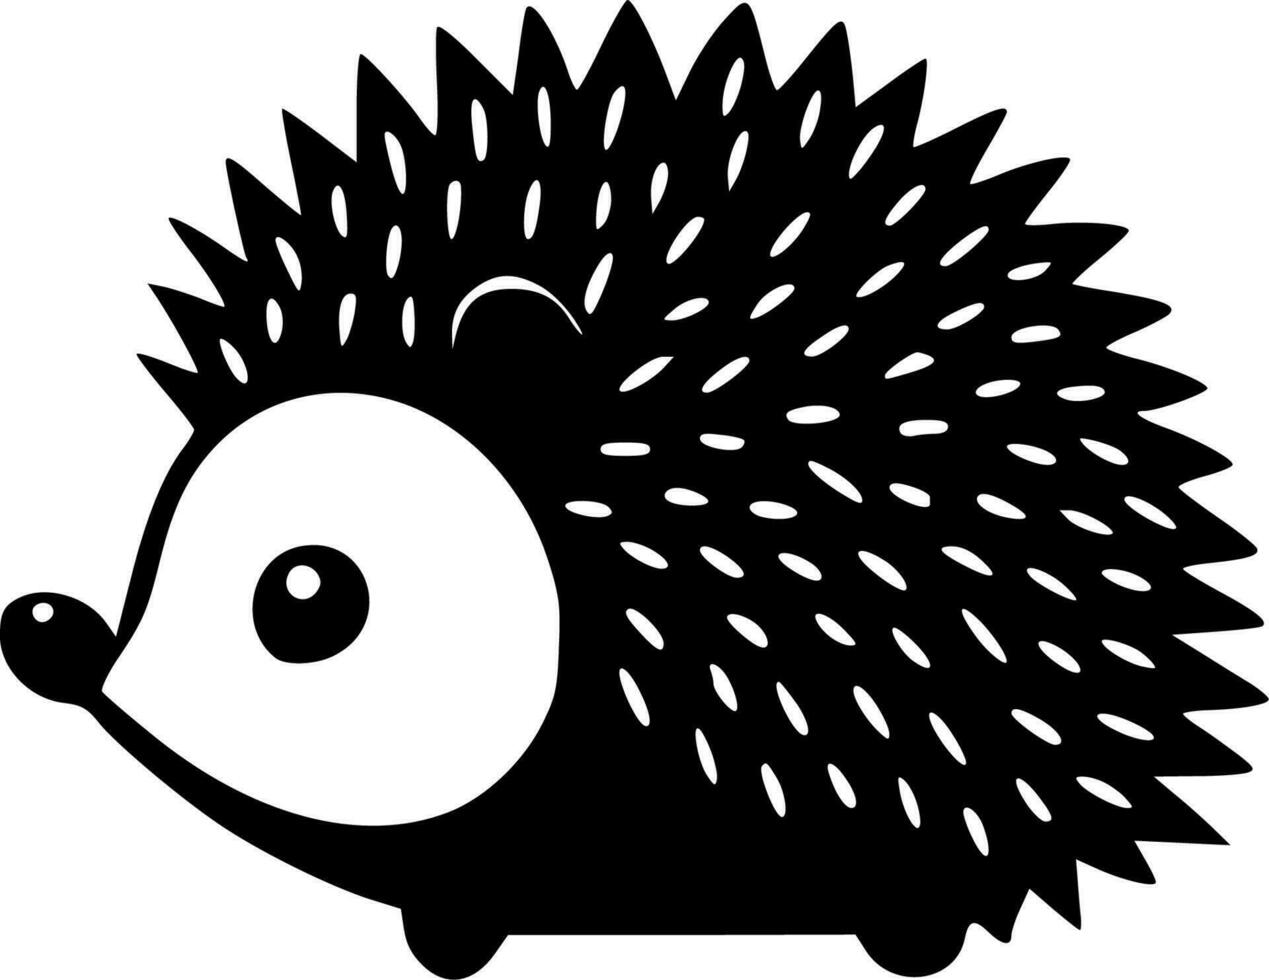 Hedgehog, Minimalist and Simple Silhouette - Vector illustration